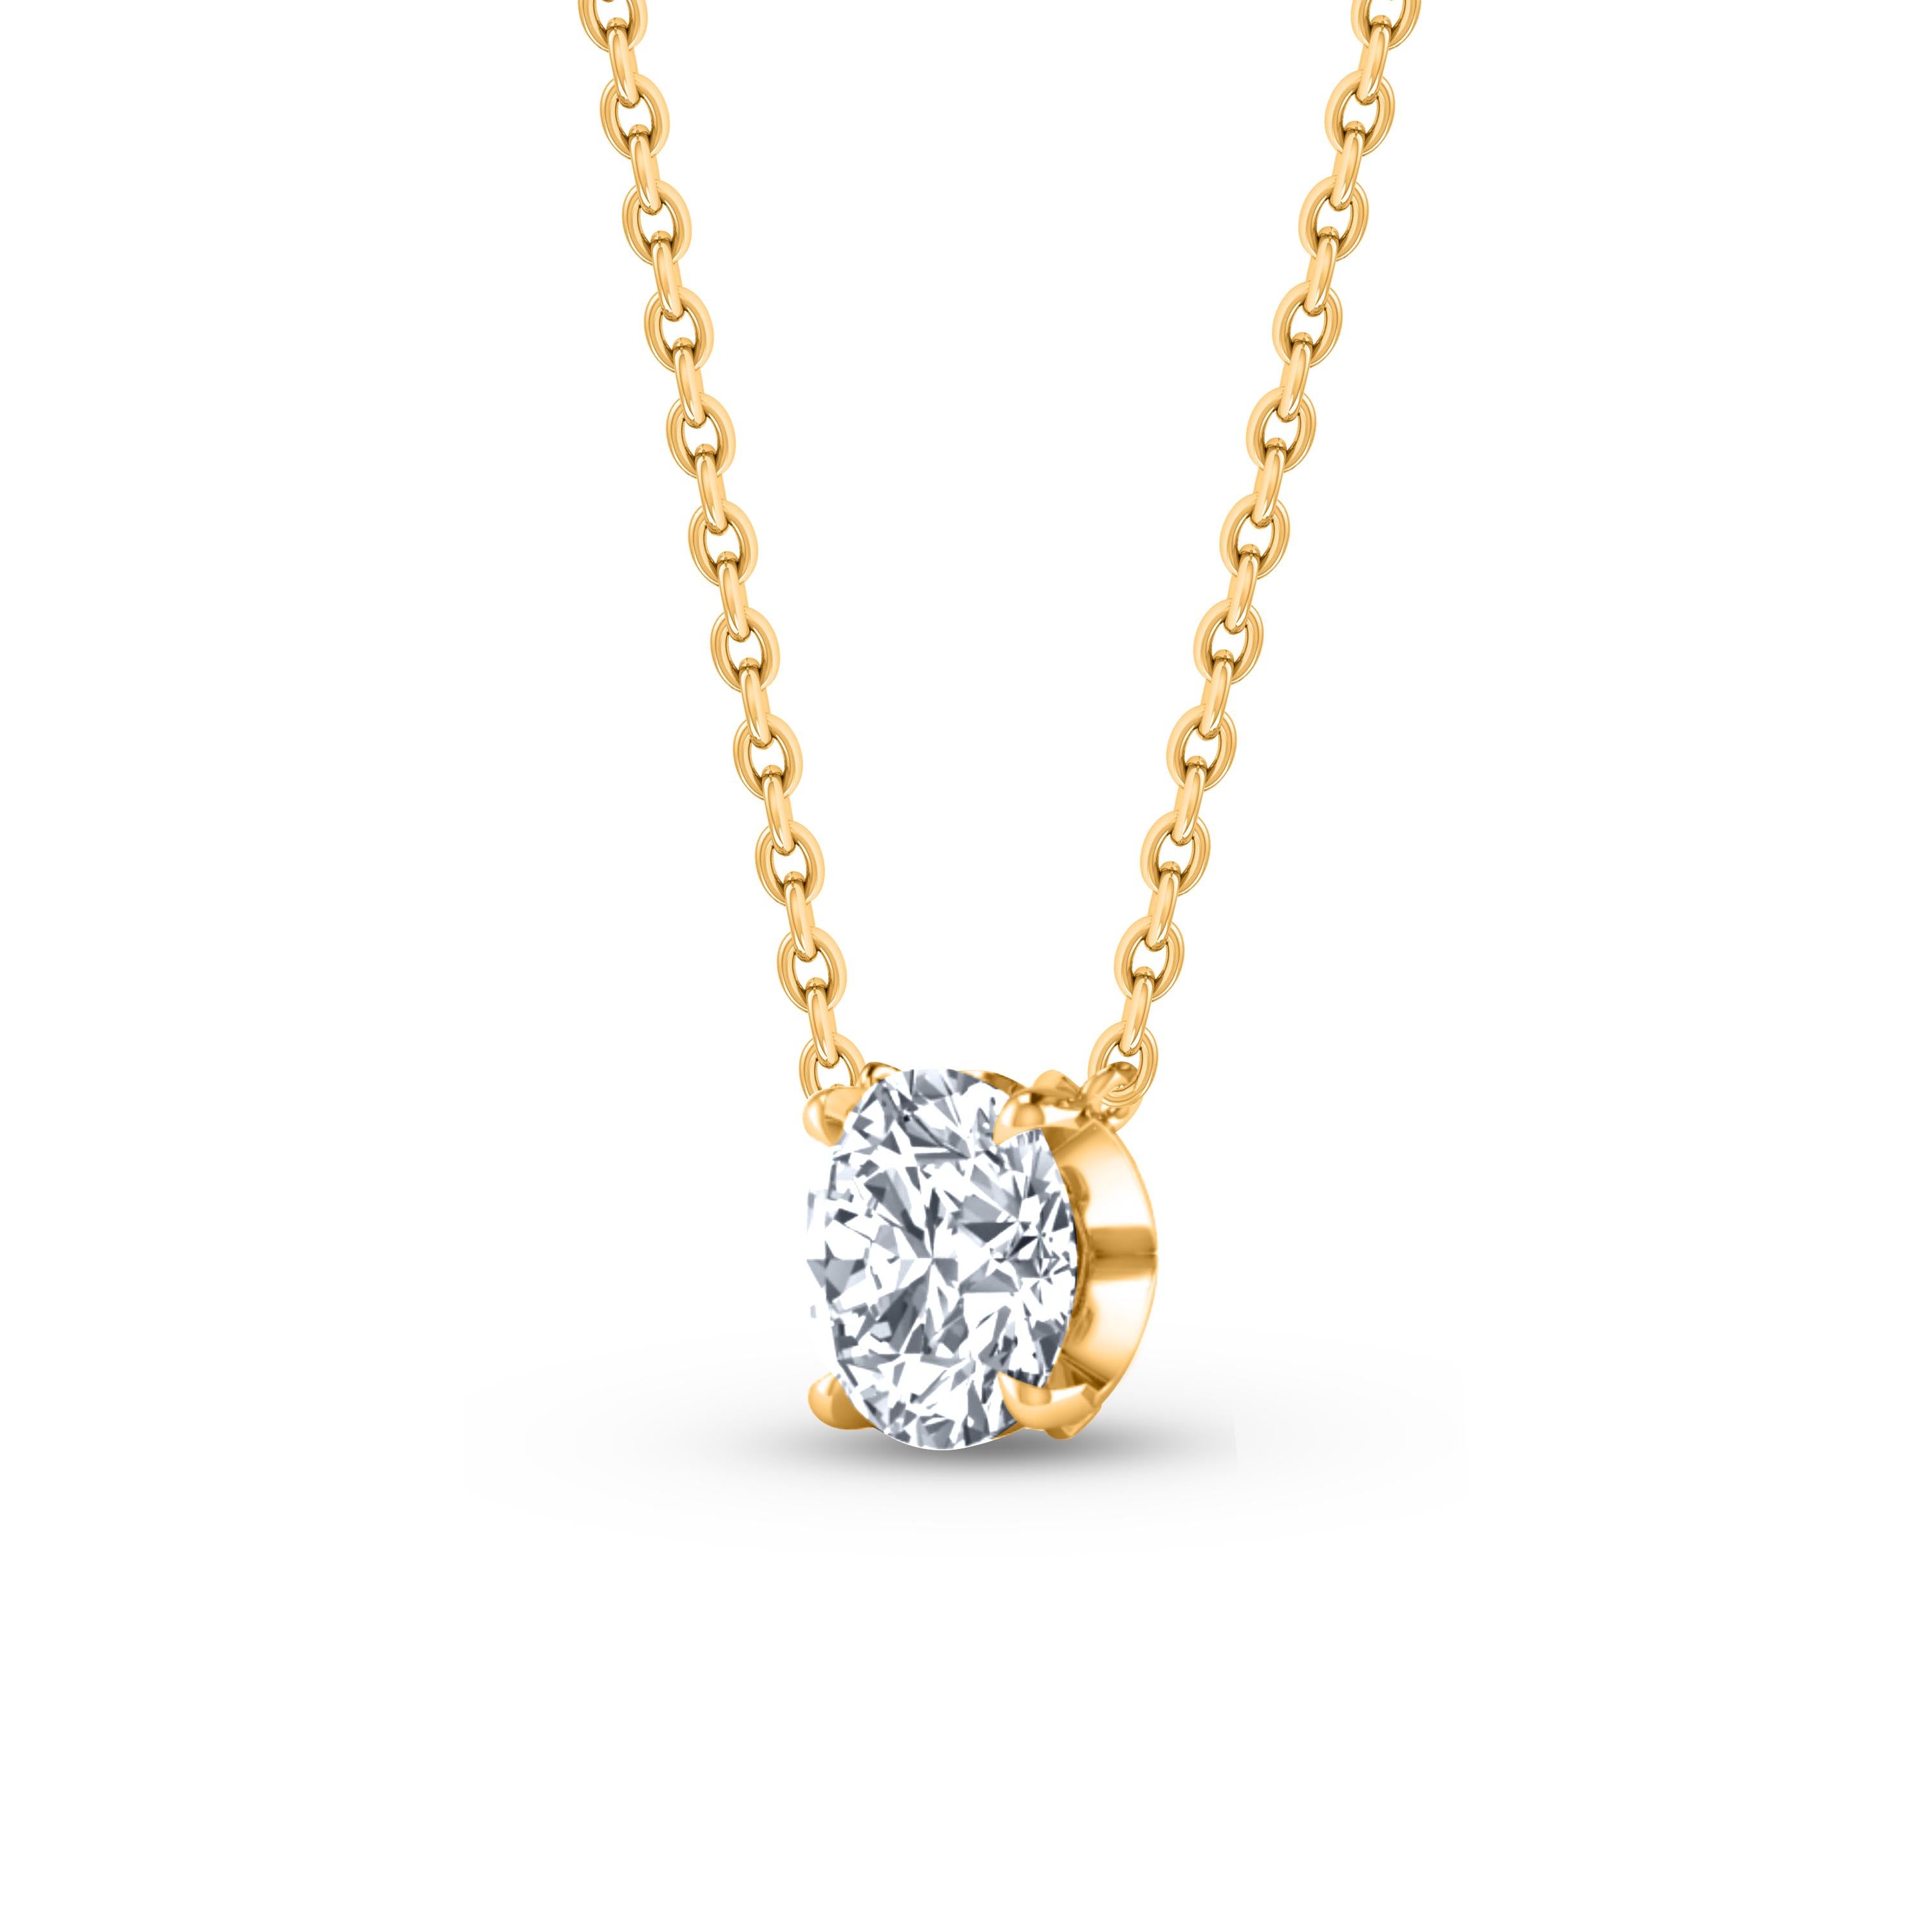  Ce collier solitaire en diamant présente un seul diamant taille brillant de 0,27 carat en serti clos en or jaune 18 KT. Cet élégant collier comprend une chaîne en câble de 20 pouces avec des rallonges de 16 et 18 pouces. Ce collier classique sera